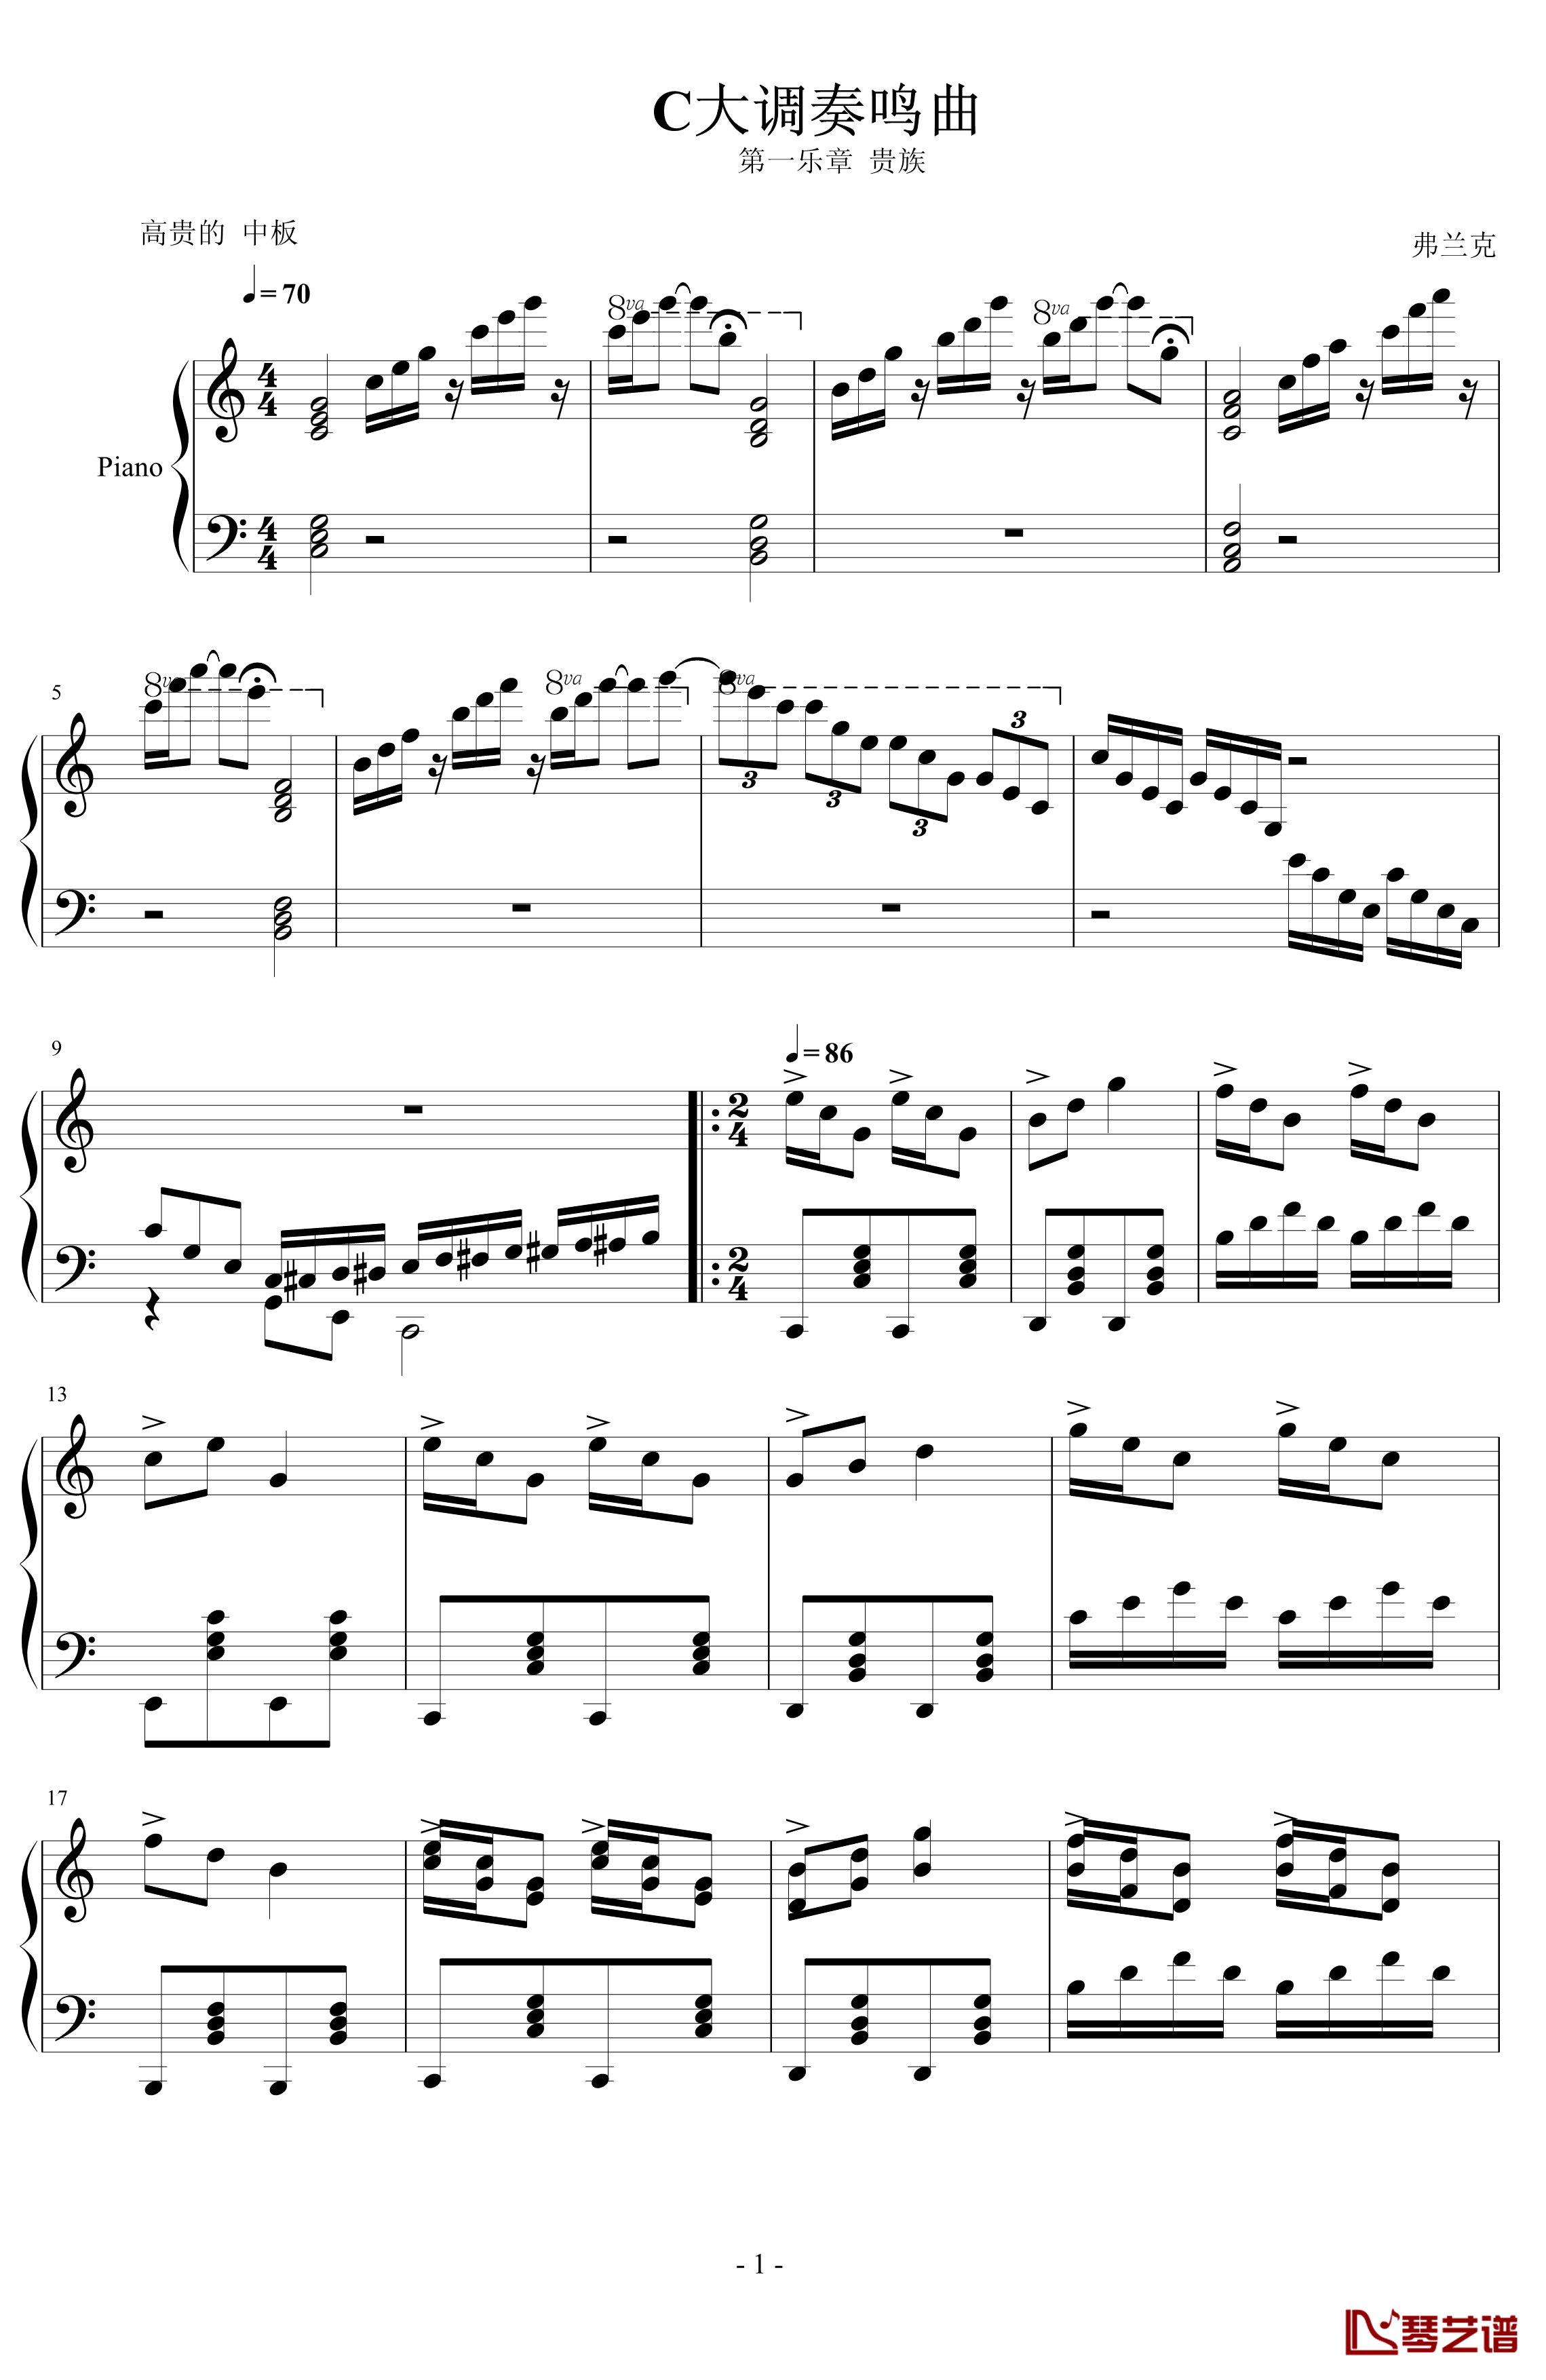 C大调奏鸣曲钢琴谱-弗兰克1